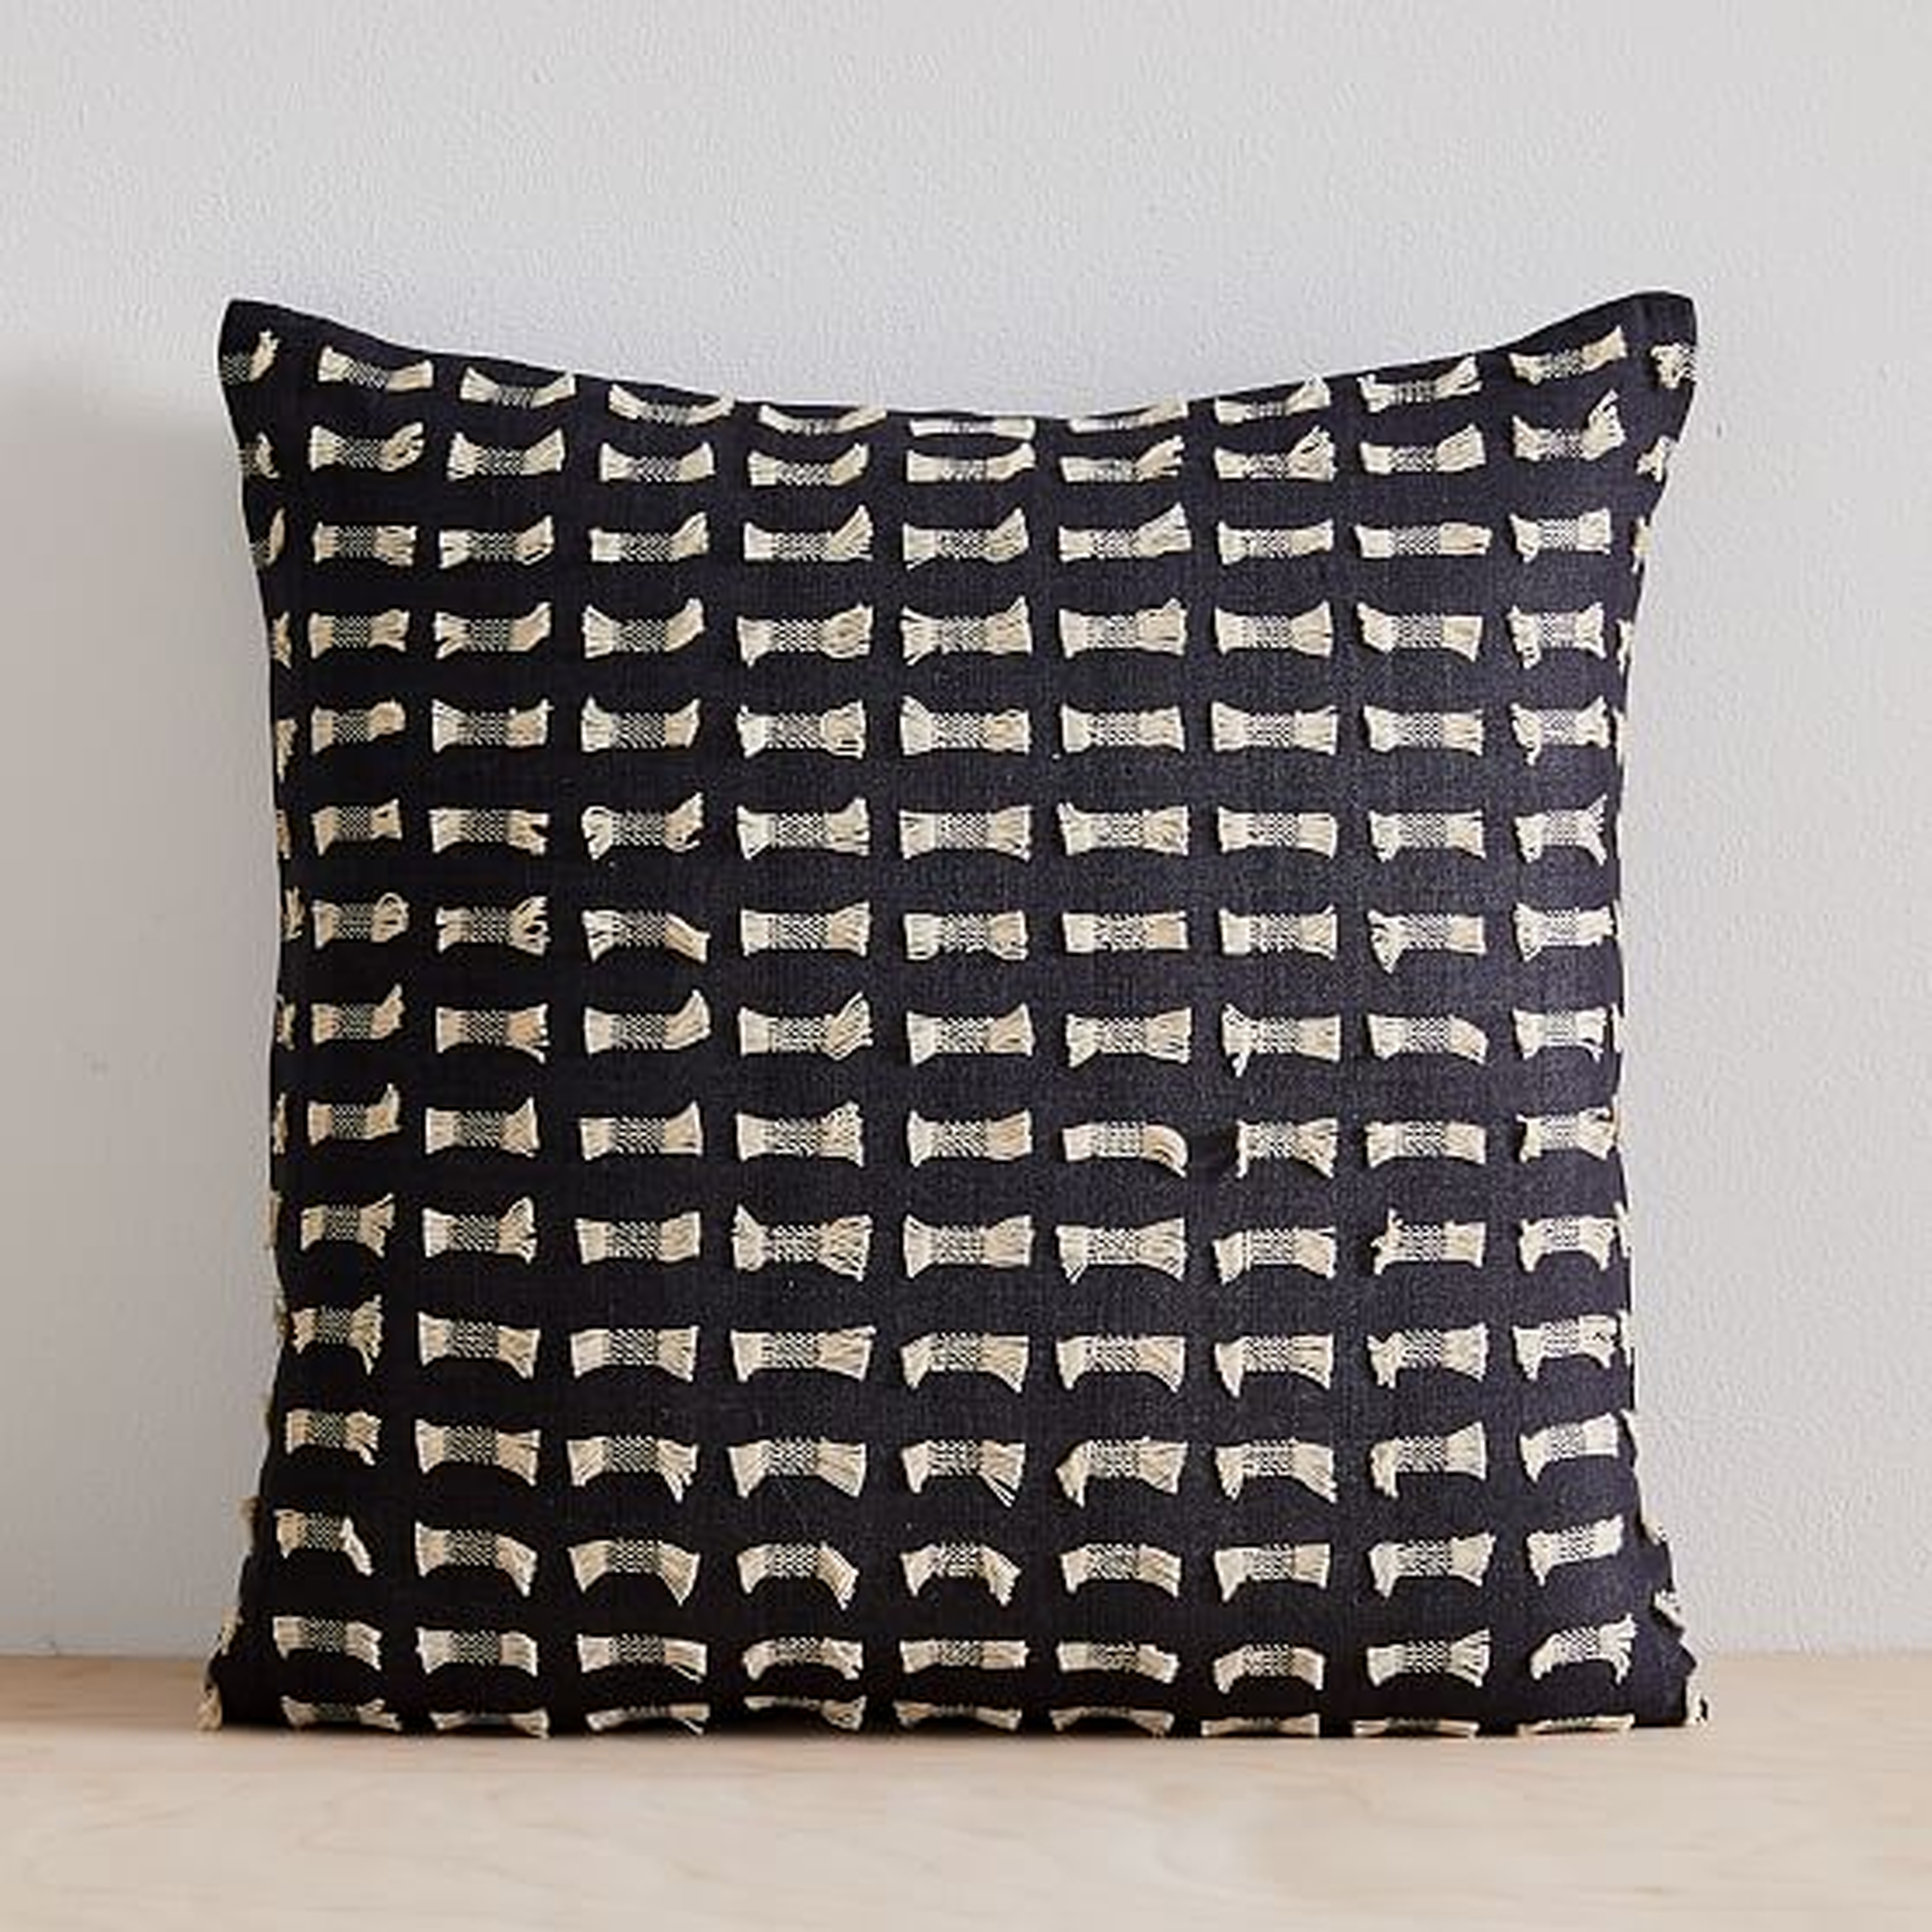 Cotton Silk Pixel Pillow Cover, Set of 2, Black, 18"x18" - West Elm